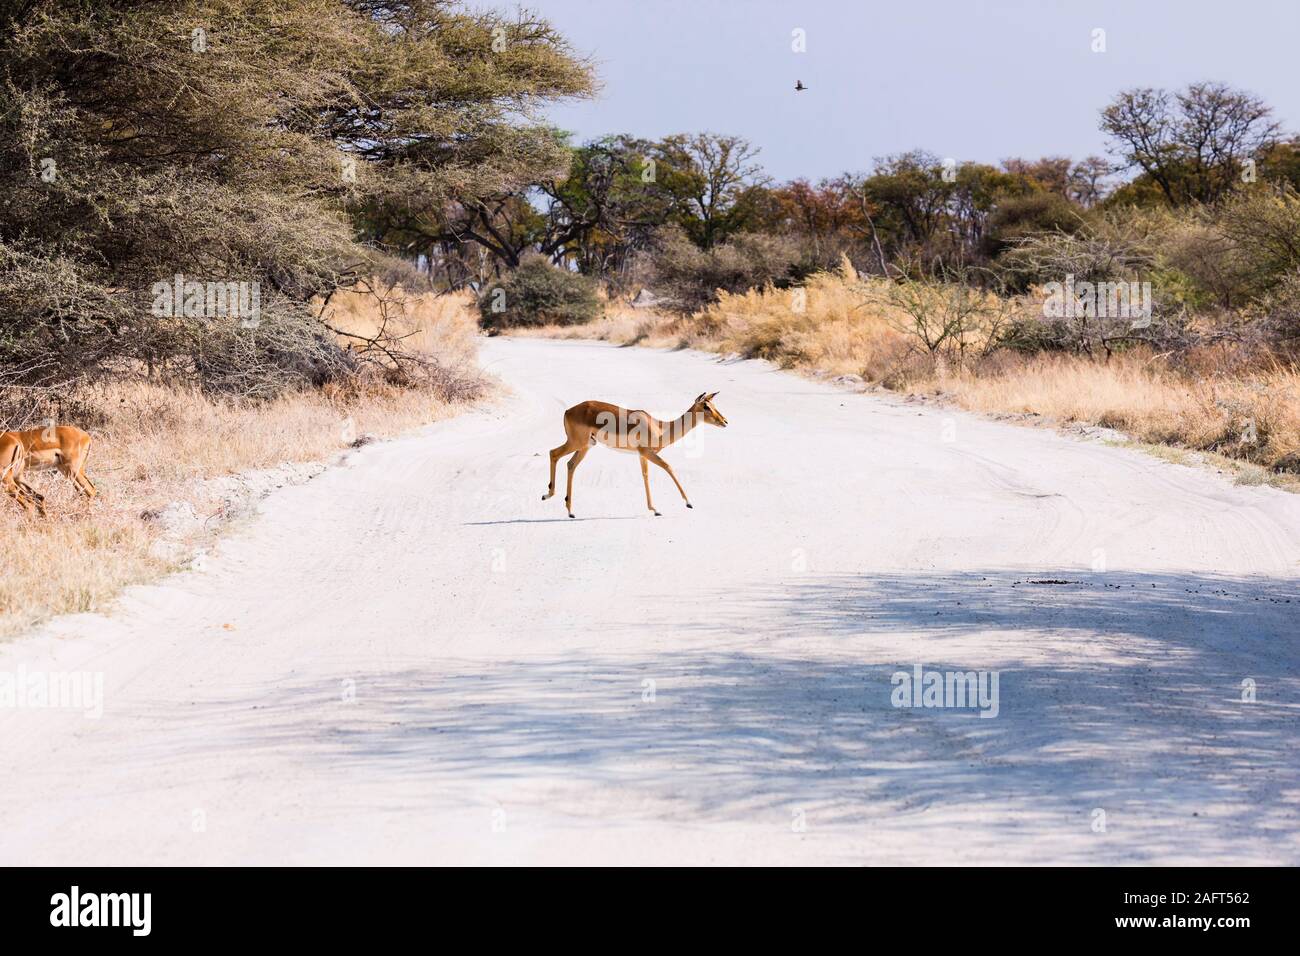 Femelle Impala traversant la route de terre, réserve de gibier de Moremi, delta d'Okavango, Botswana, Afrique du Sud, Afrique Banque D'Images